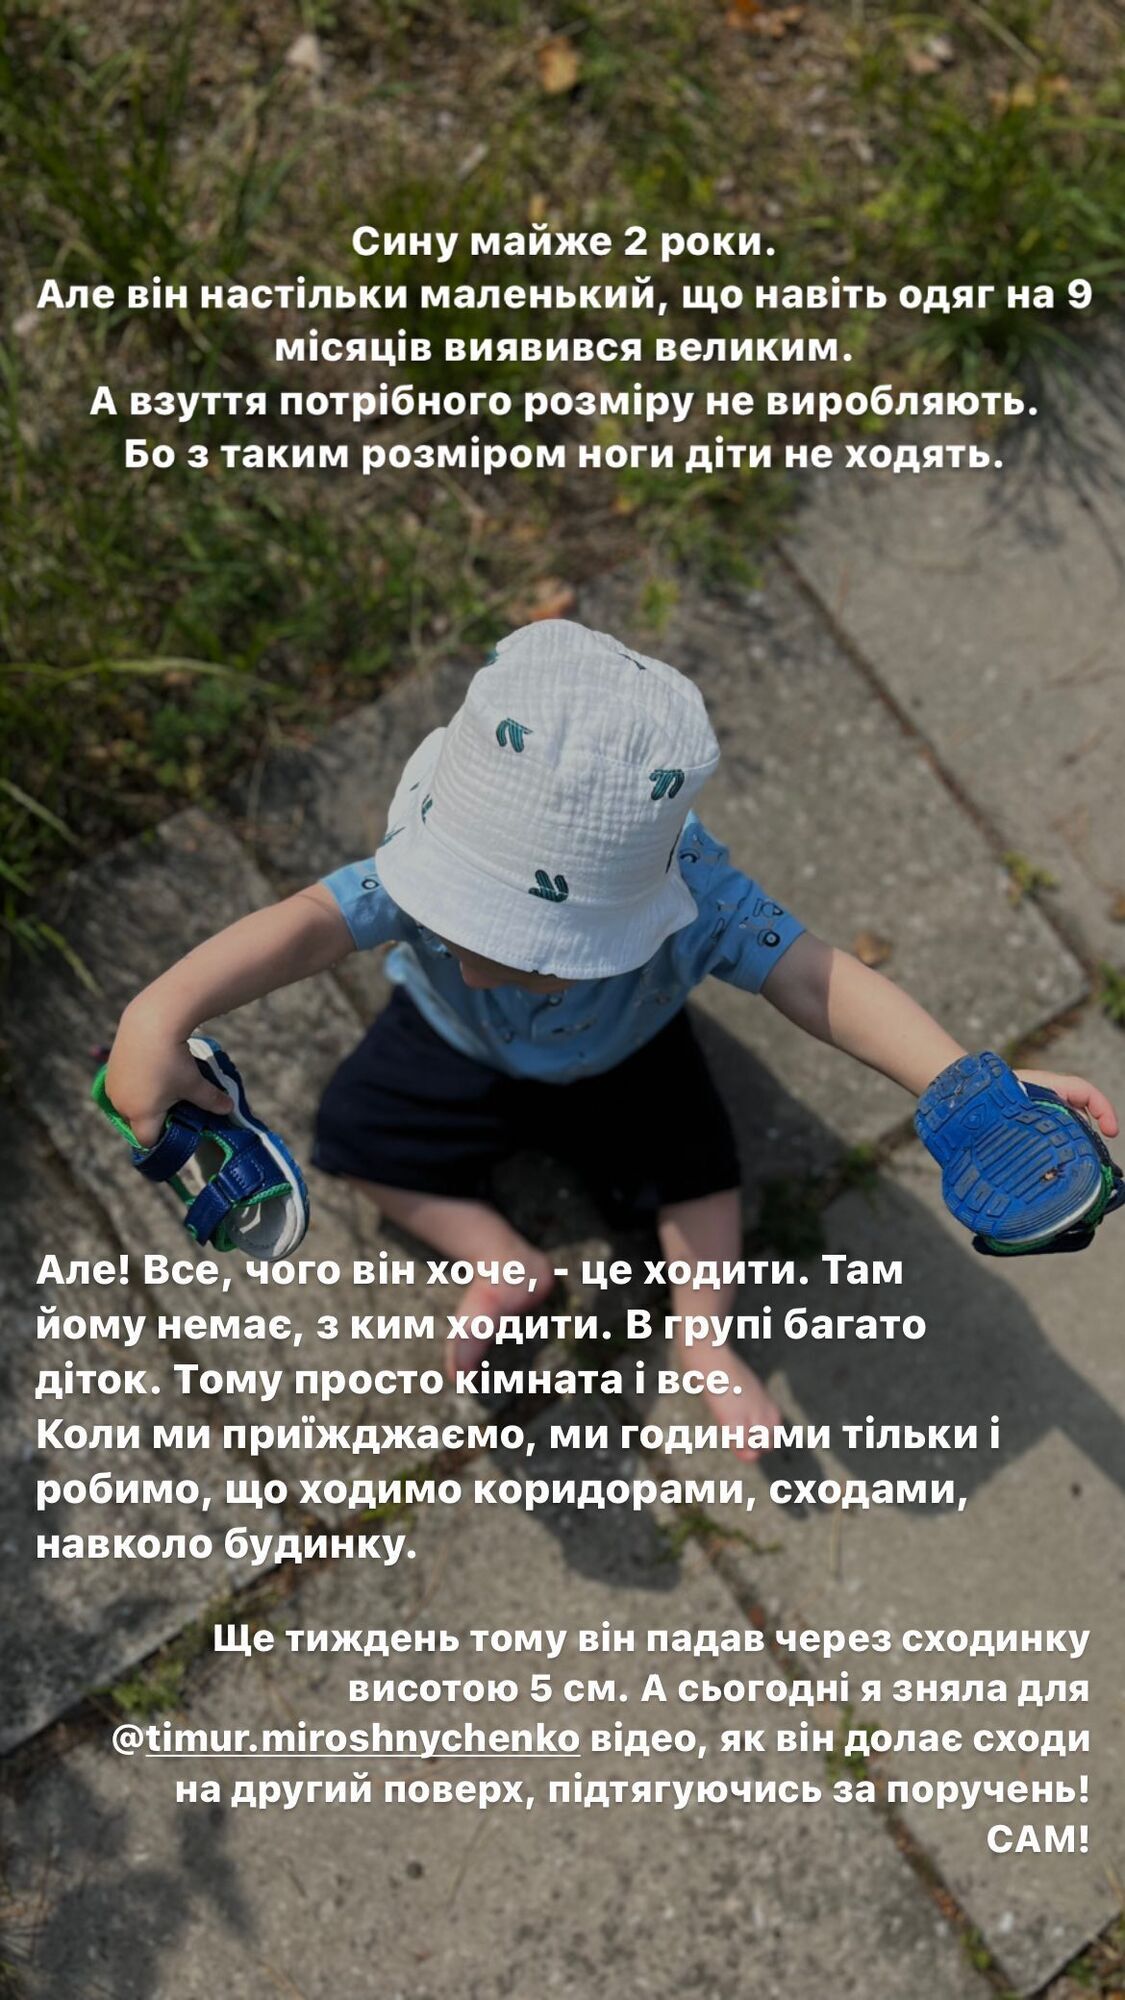 Тимур Мирошниченко умилил сеть фото с мальчиком из детдома, которого они с женой усыновят